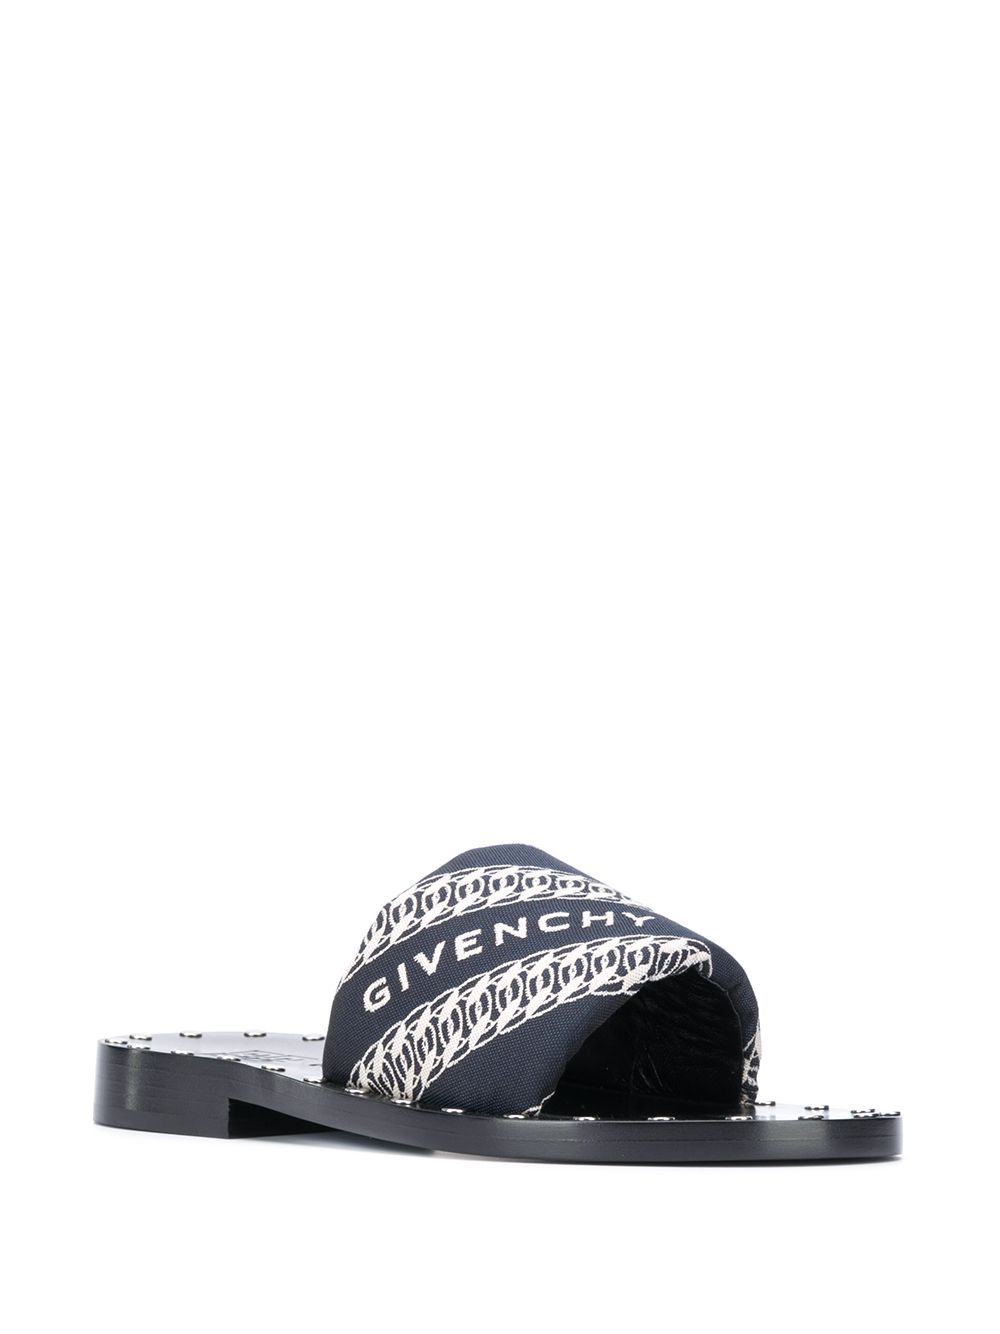 фото Givenchy сандалии с логотипом